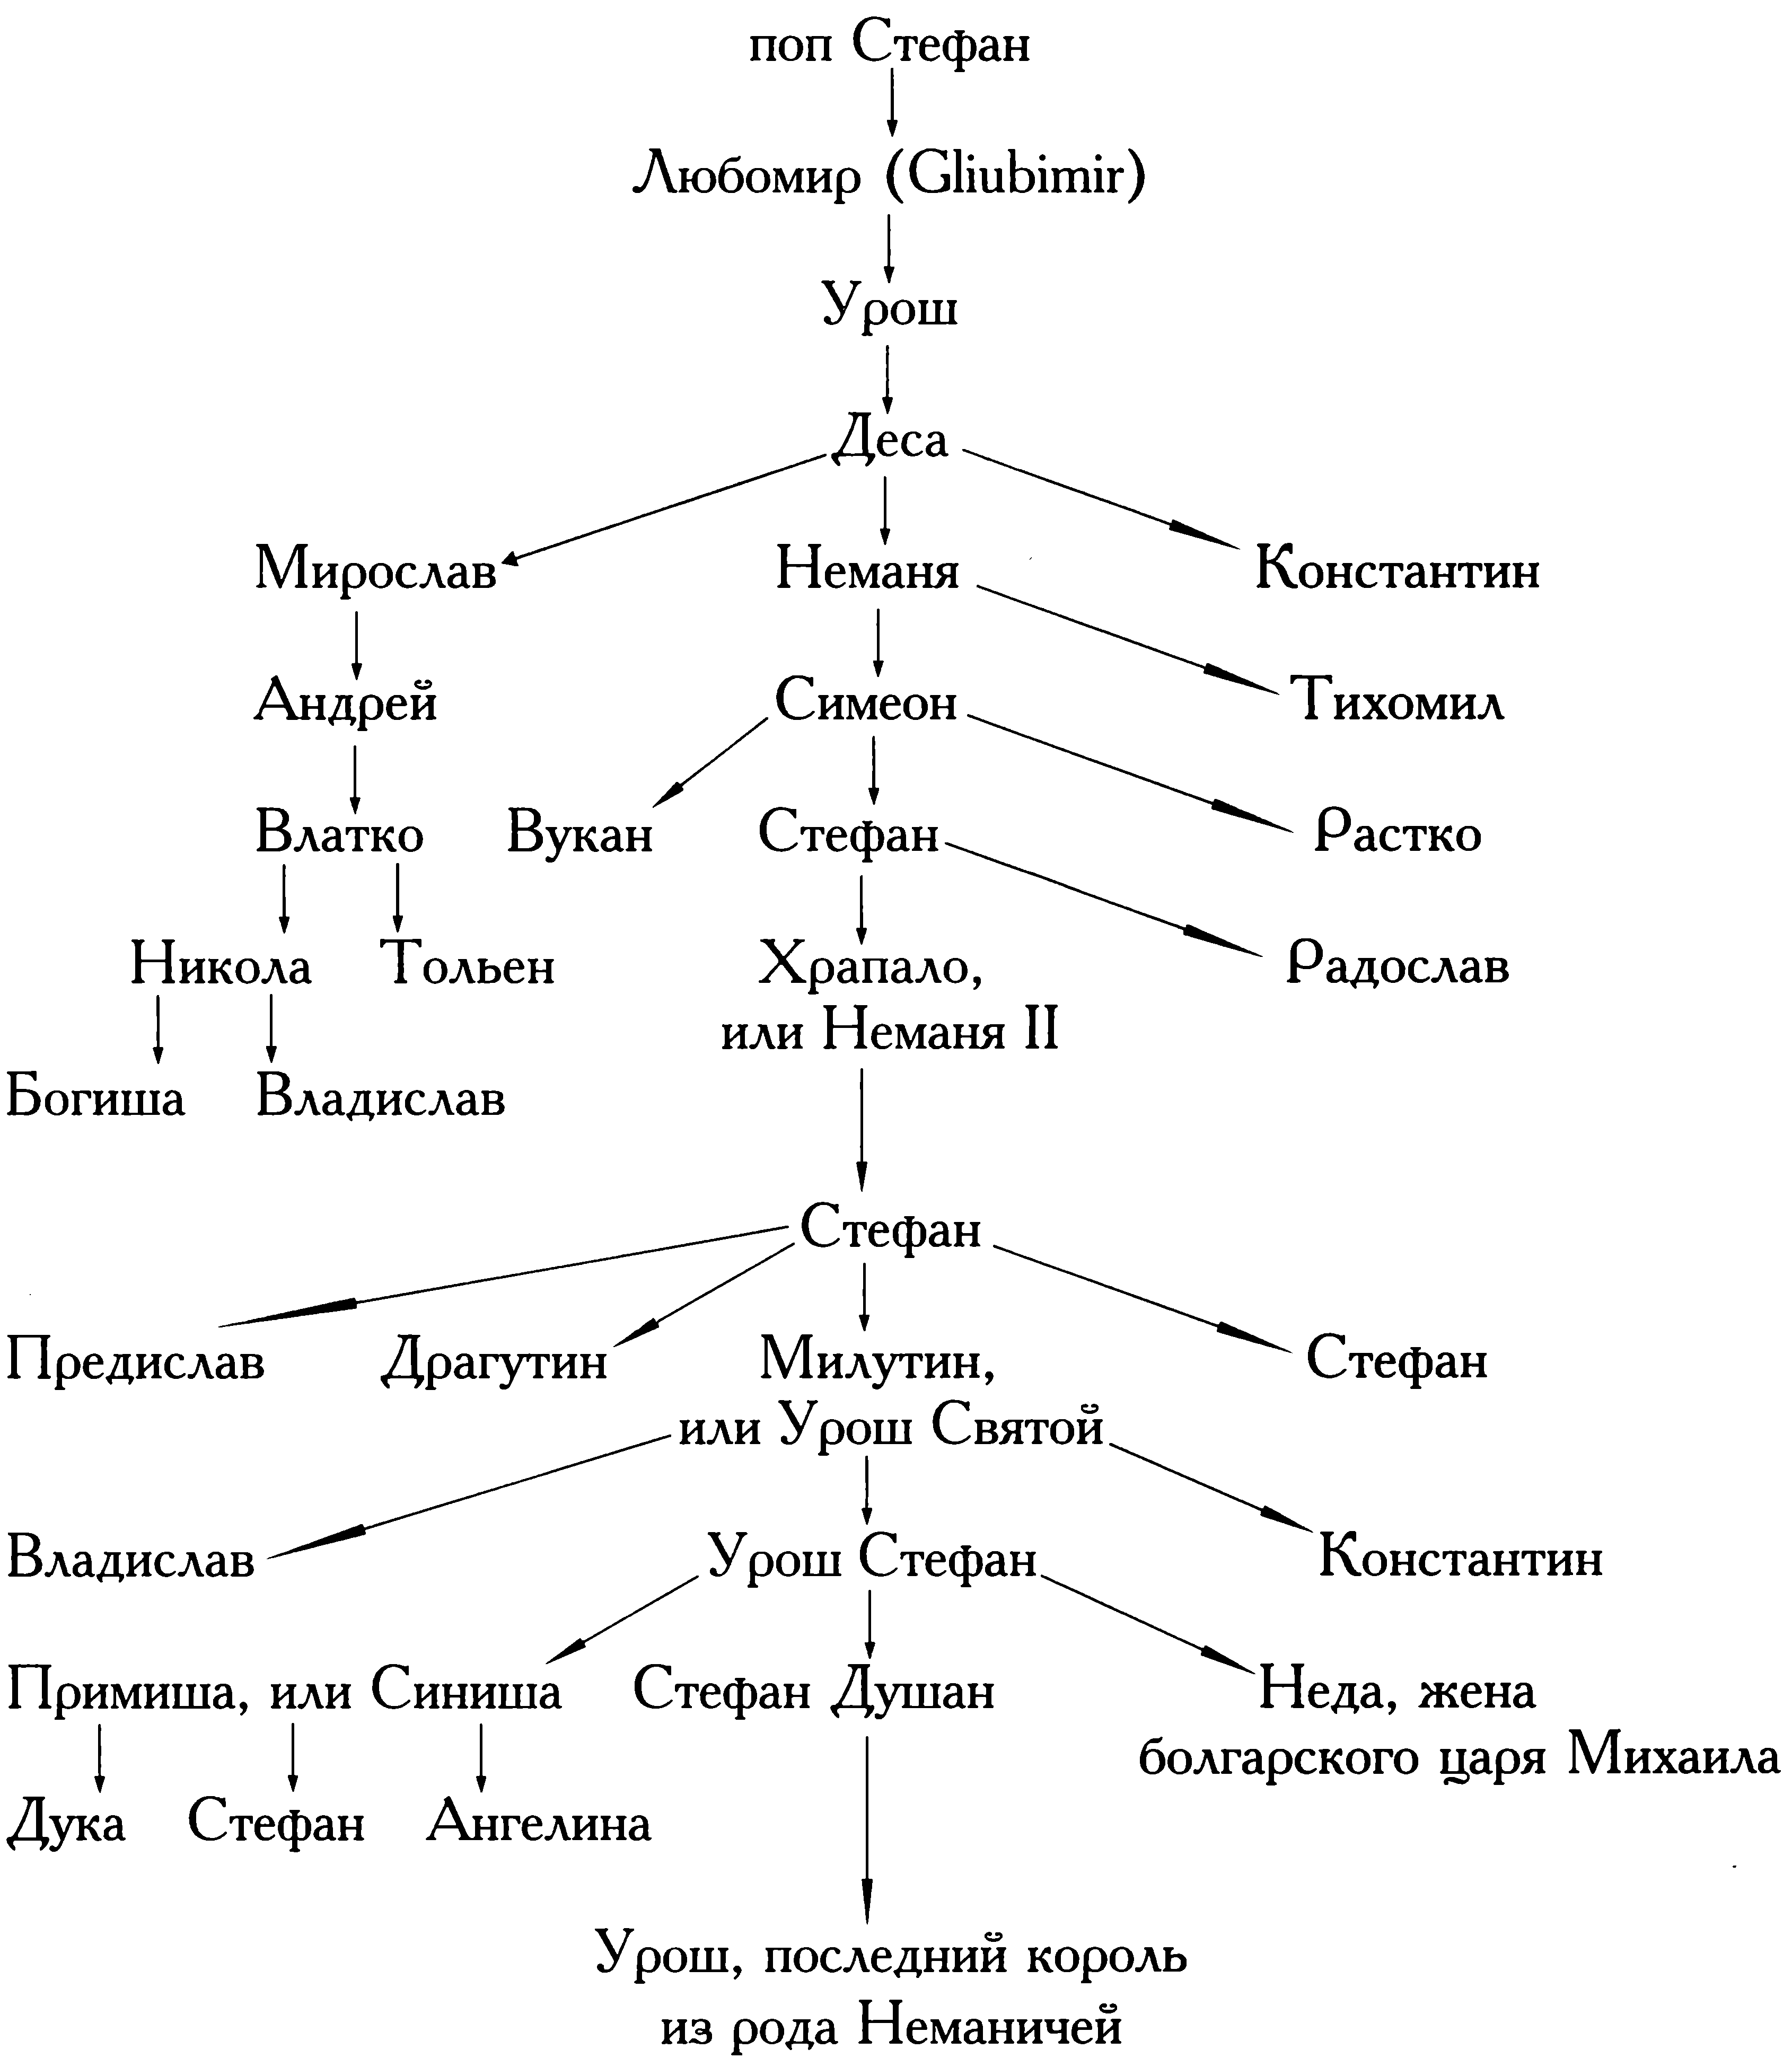 Славянское царство (историография)